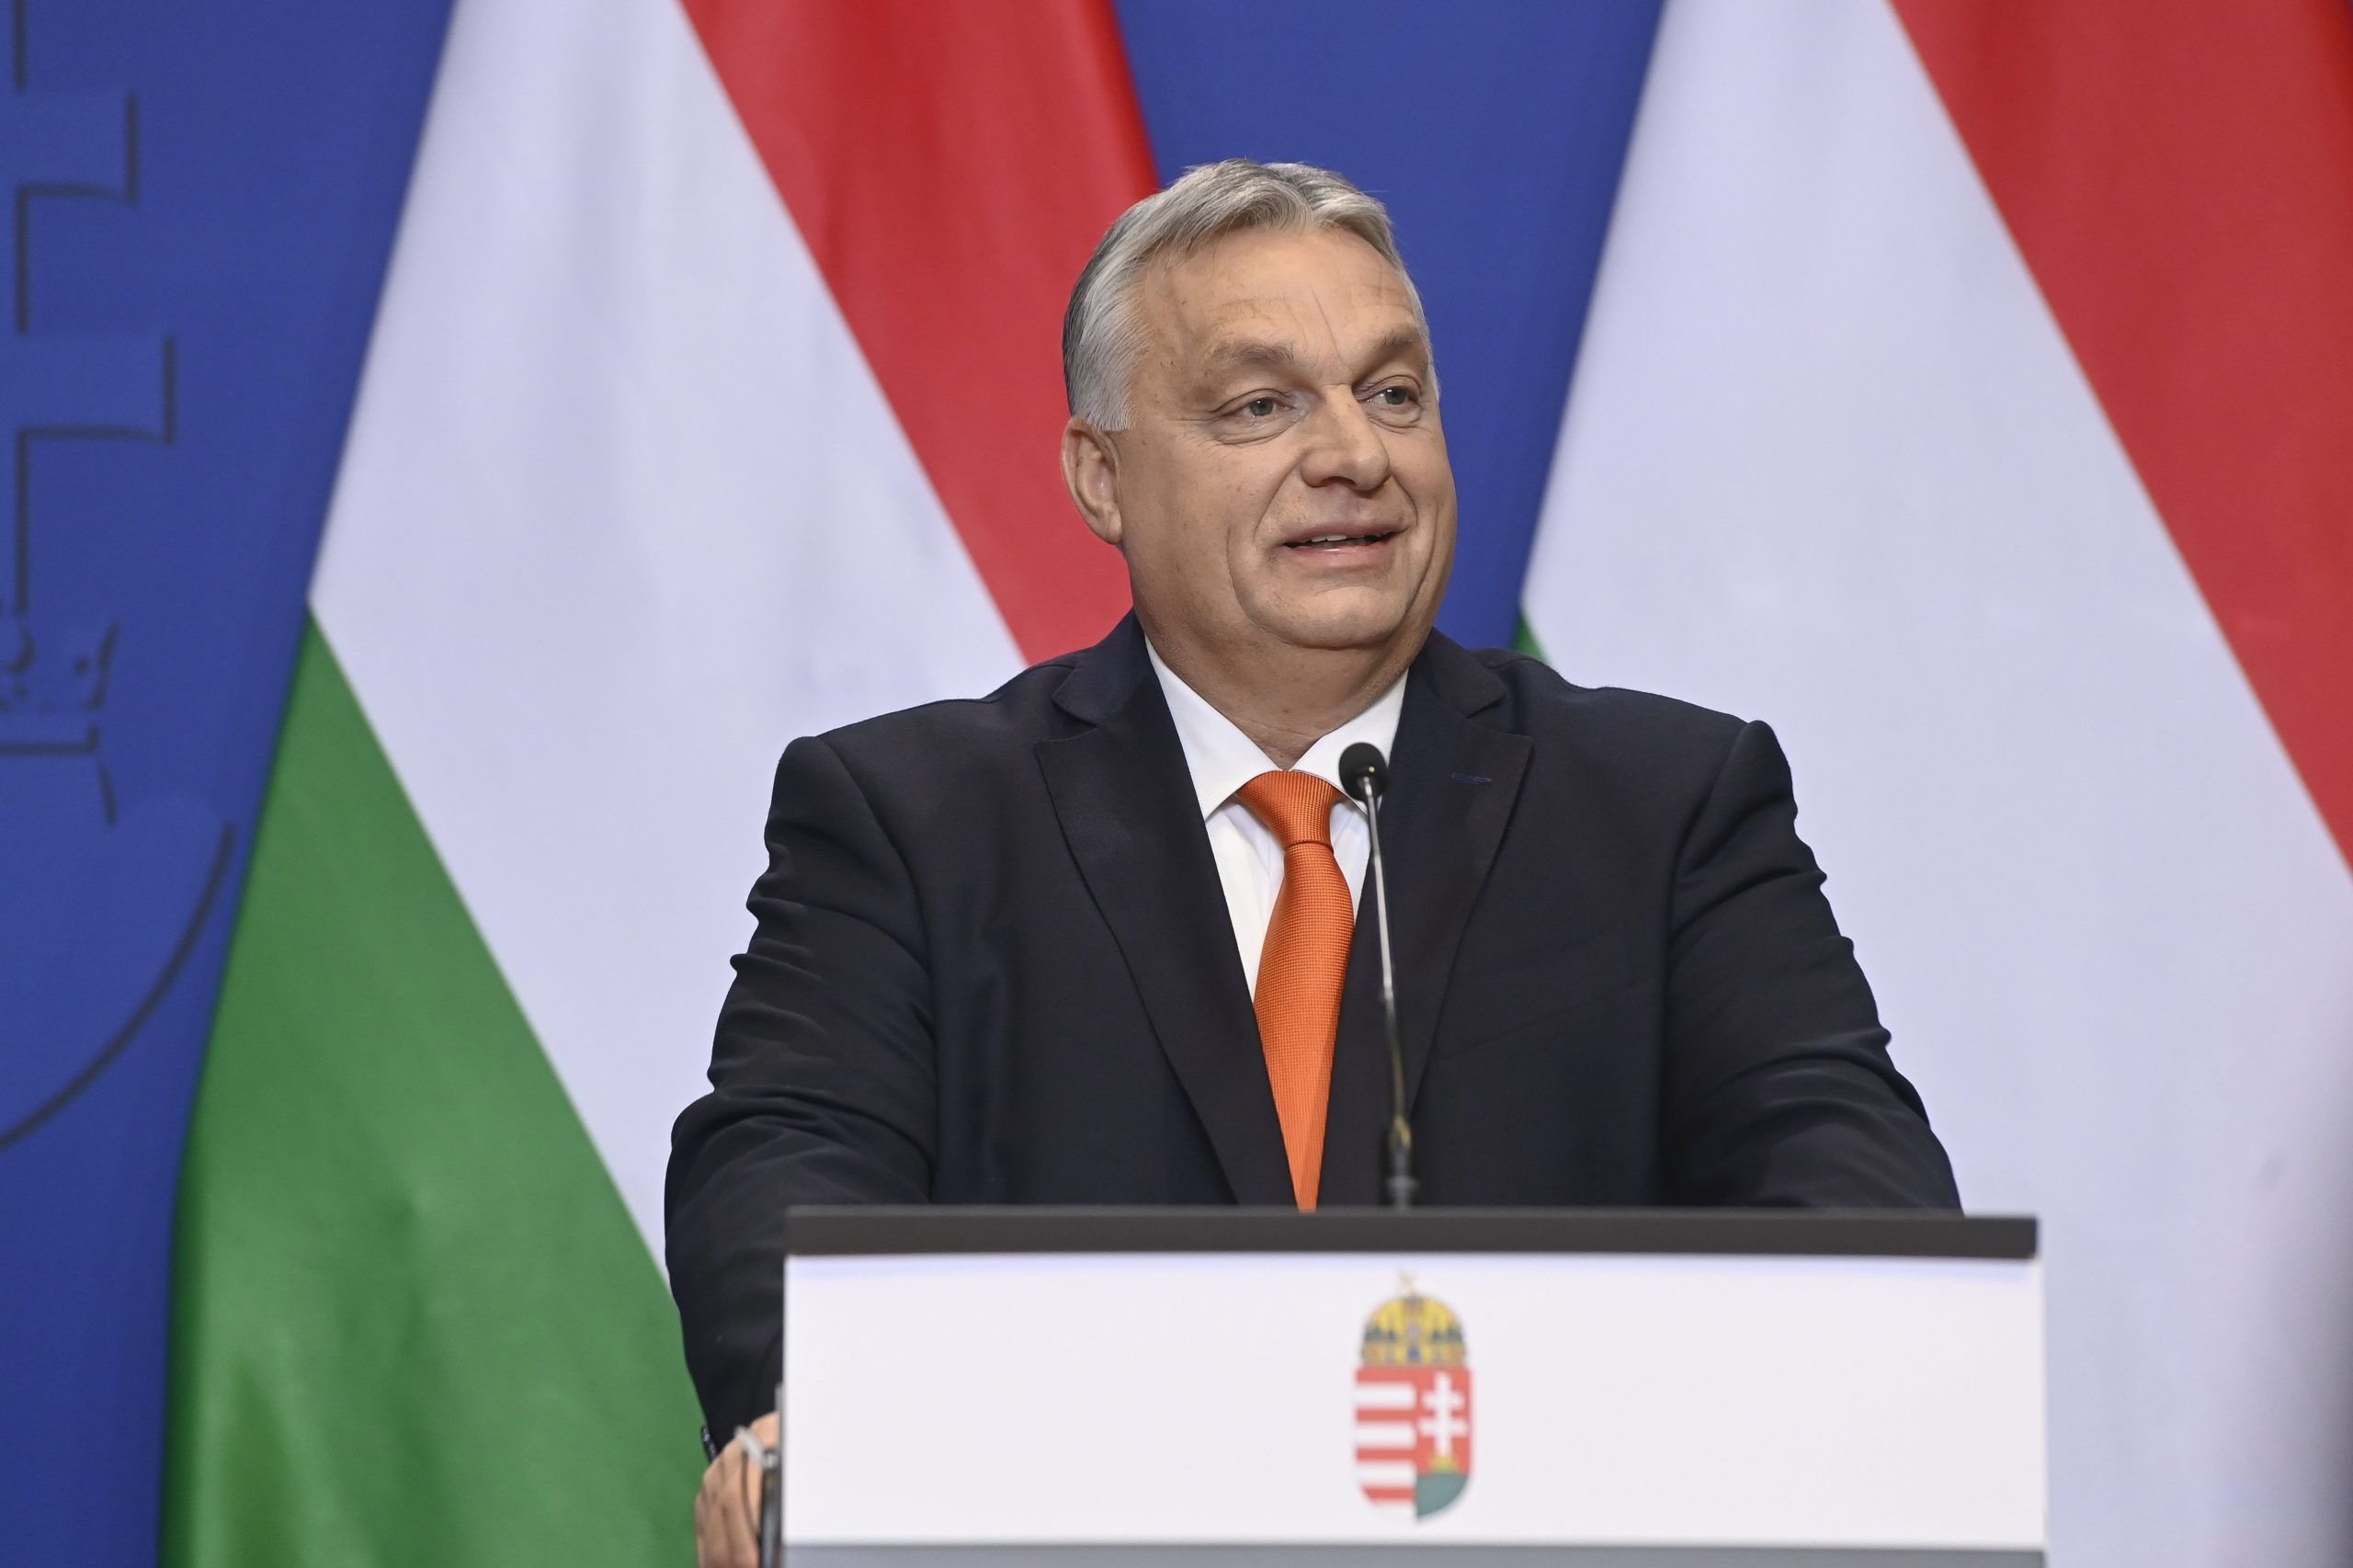 Három évtized legnehezebb éve – mondja Orbán Viktor